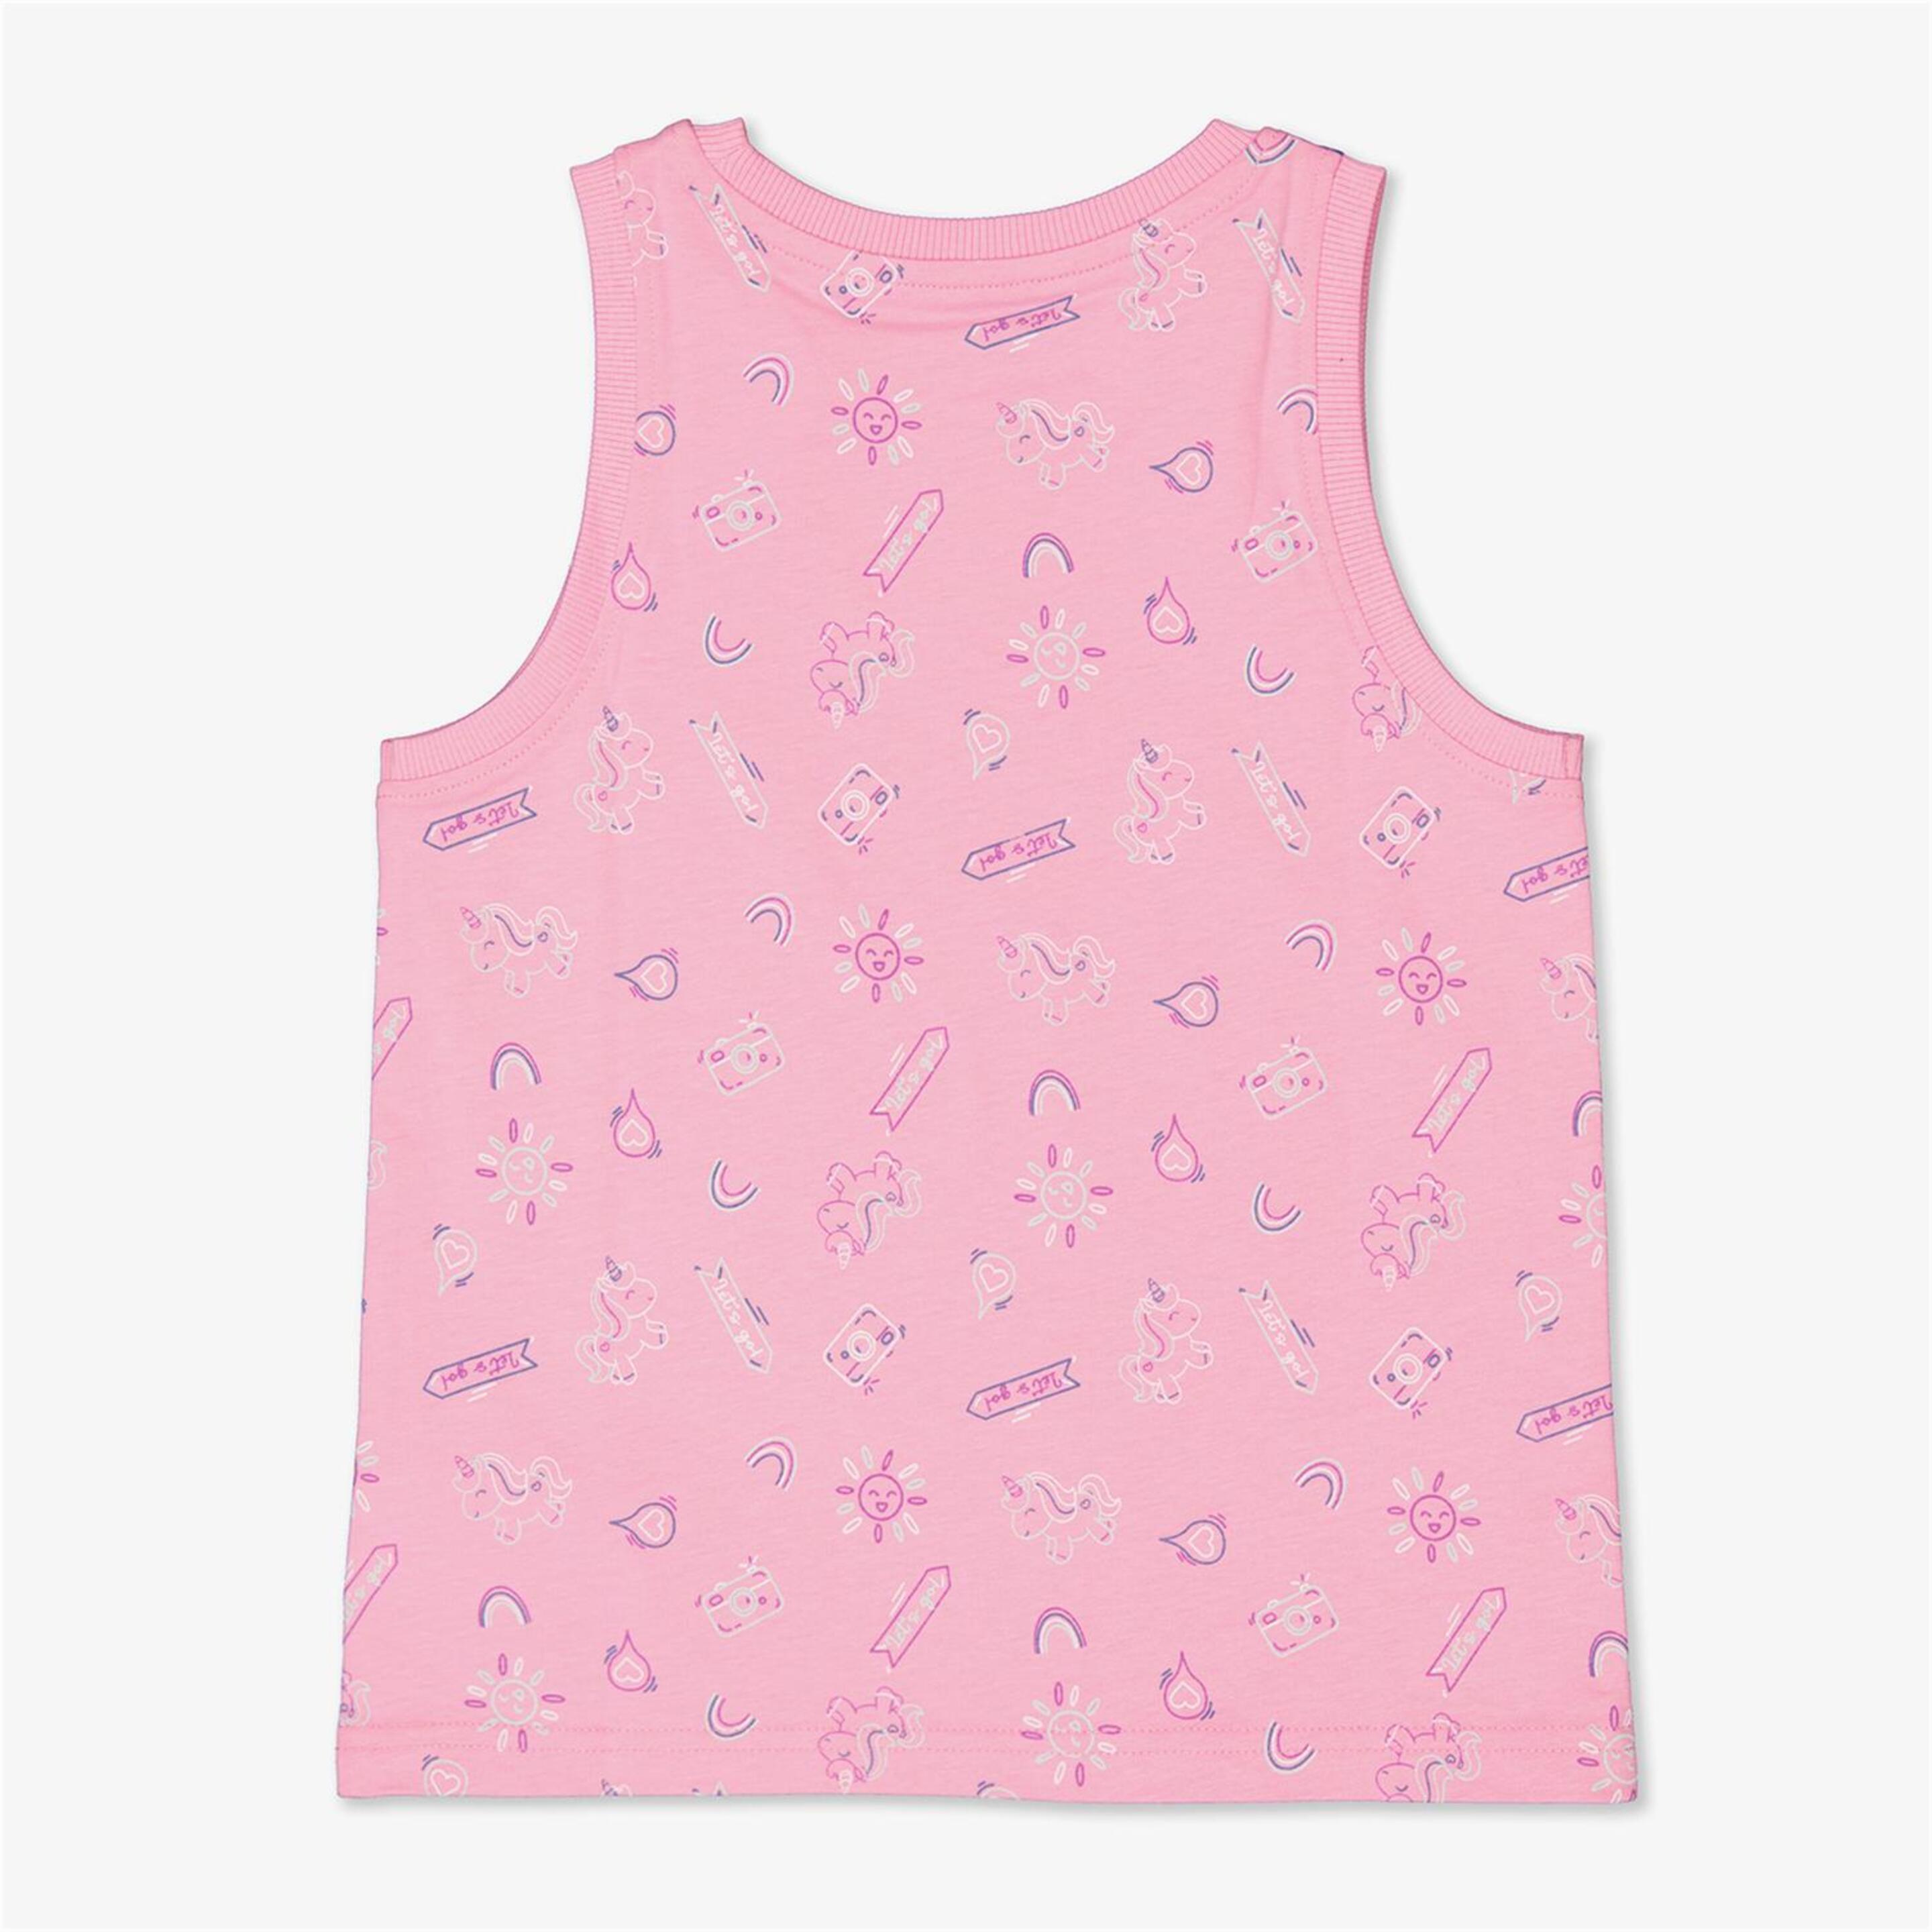 Camiseta Up - Rosa - Camiseta Tirantes Niña